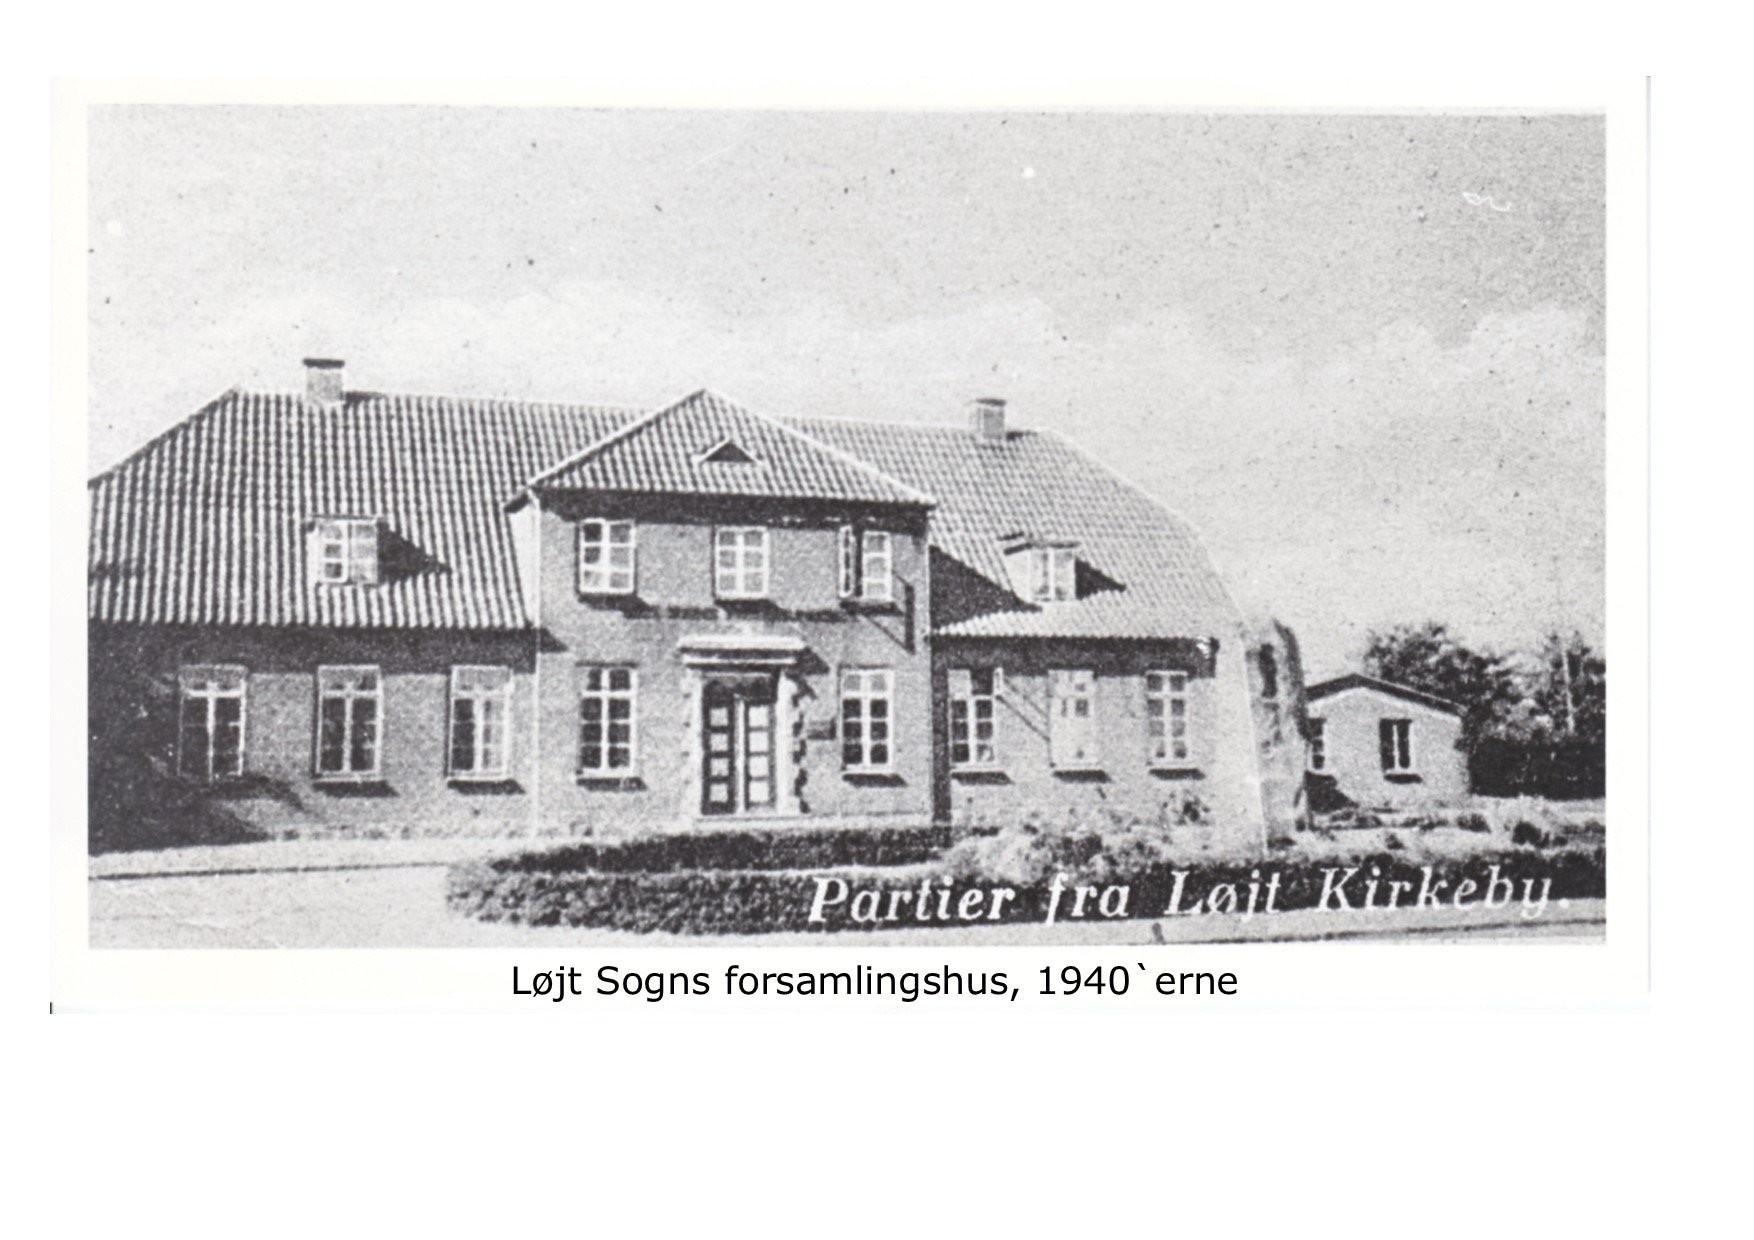 Løjr Sogns forsamlingshus - 1940 